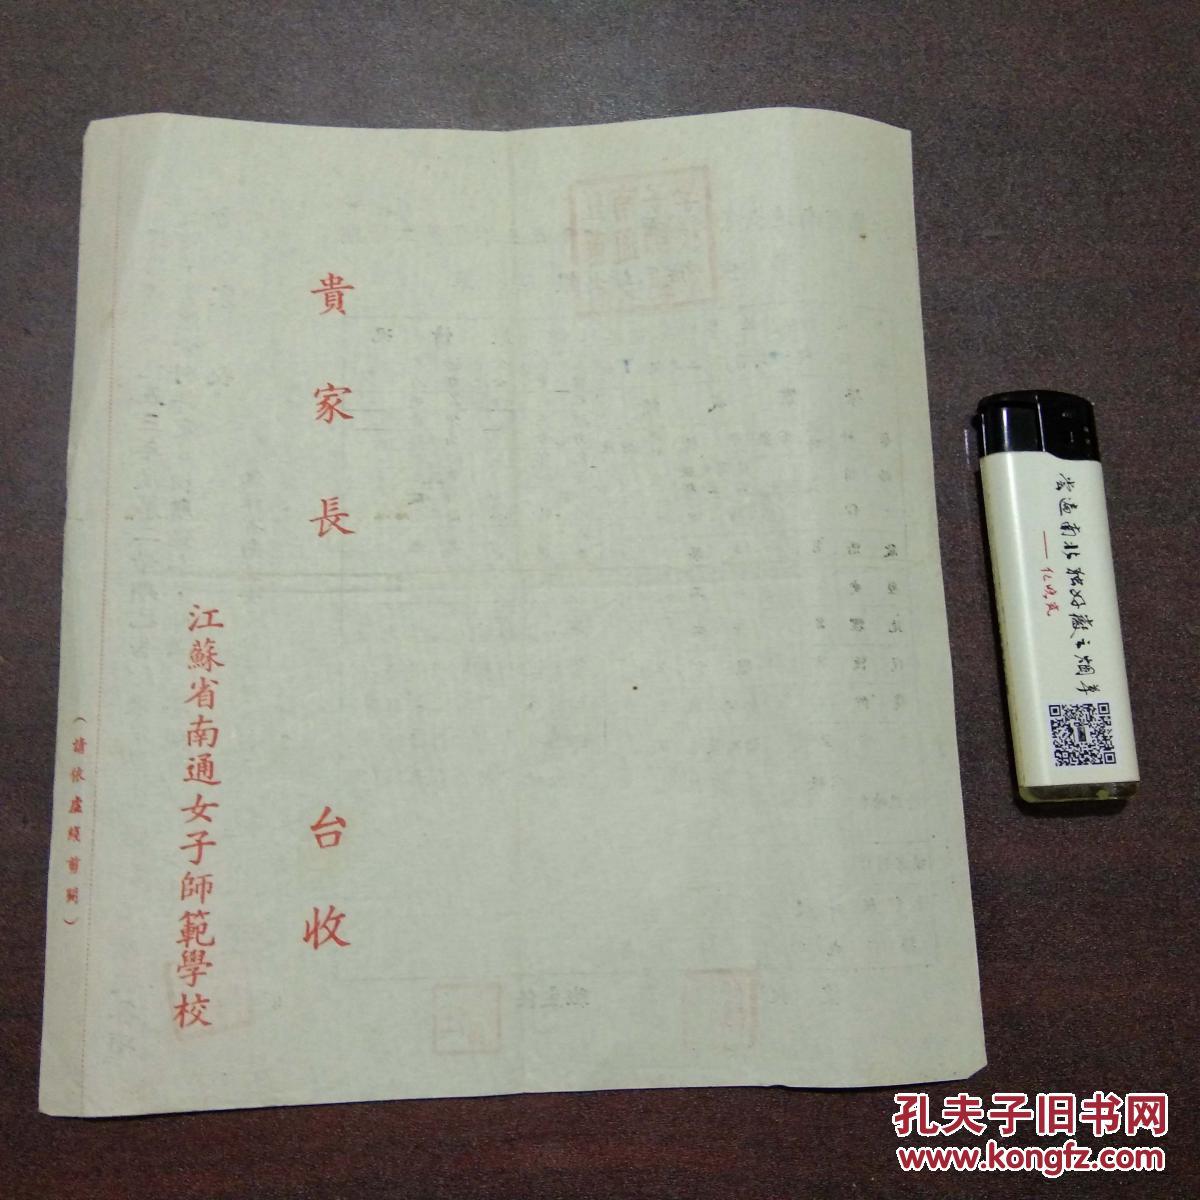 江苏省南通女子师范学校学生成绩报告单:一九